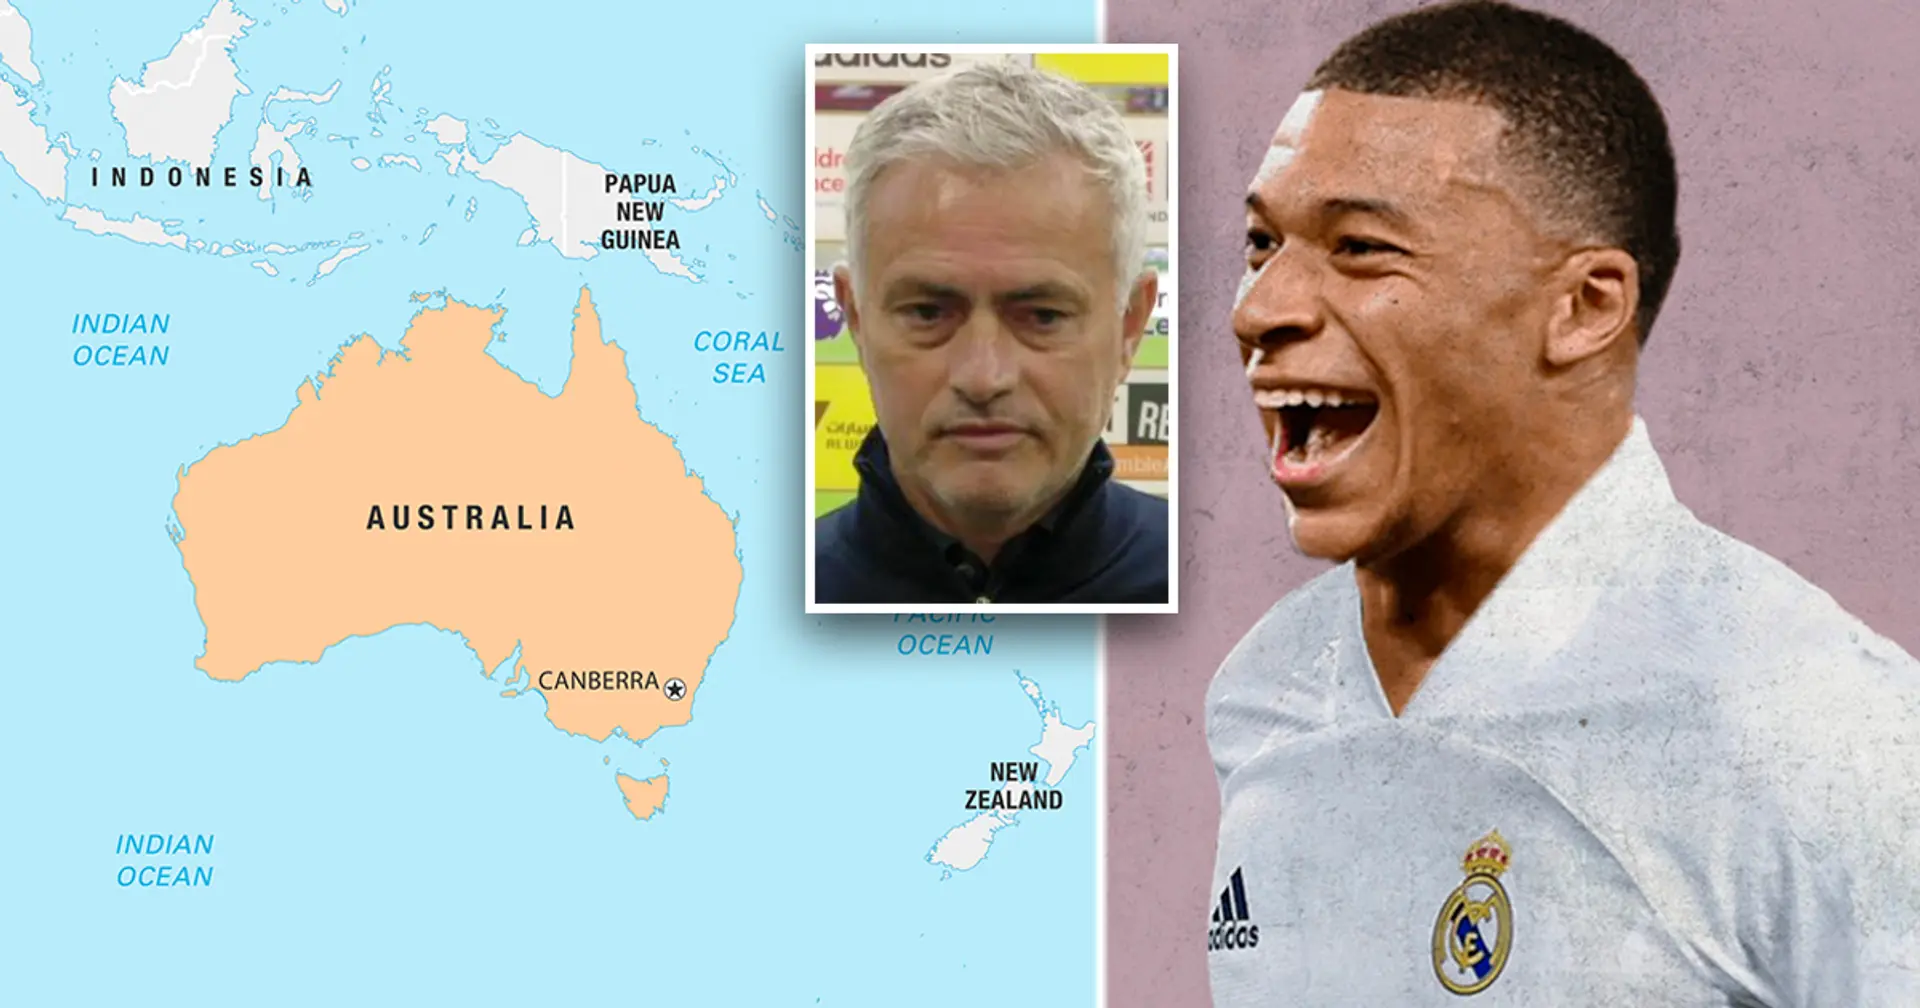 Voyage surprise en Australie, retour possible de Mourinho : 4 grands événements qui attendent le Barça de mai à août